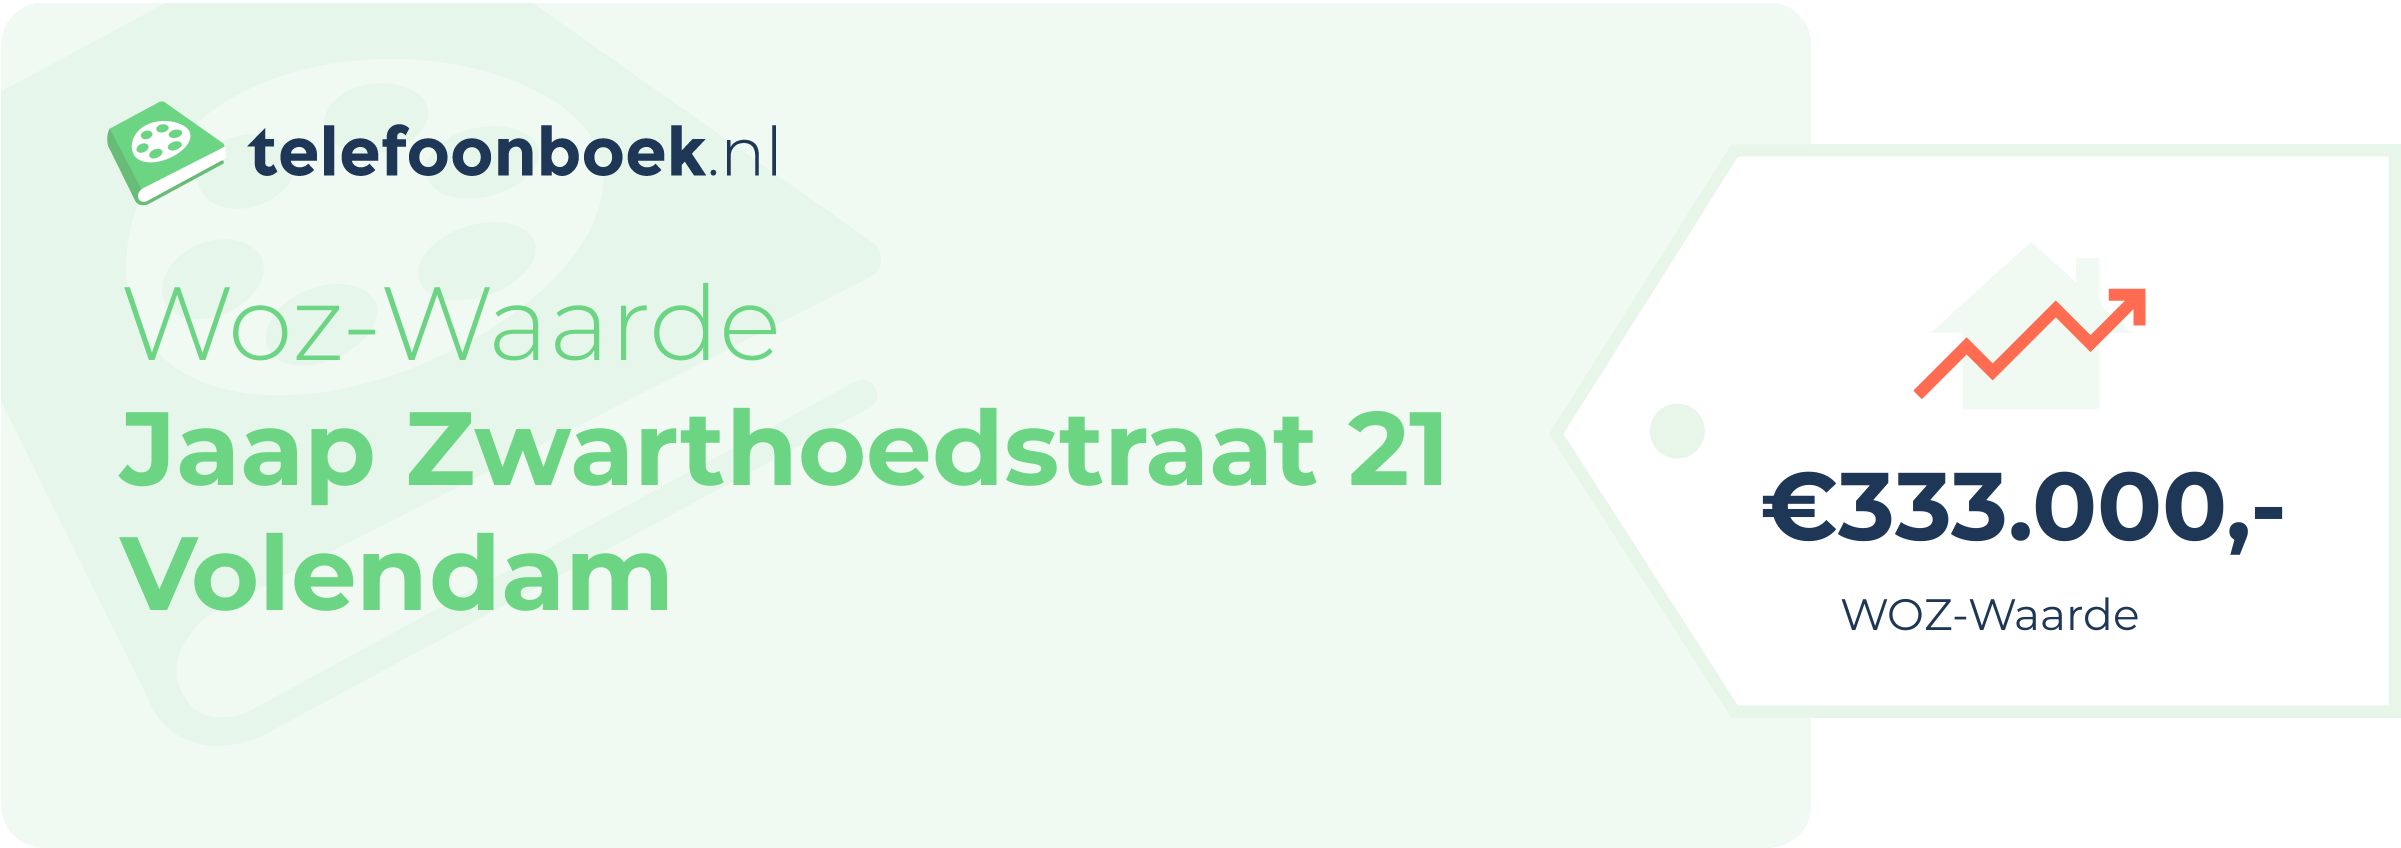 WOZ-waarde Jaap Zwarthoedstraat 21 Volendam